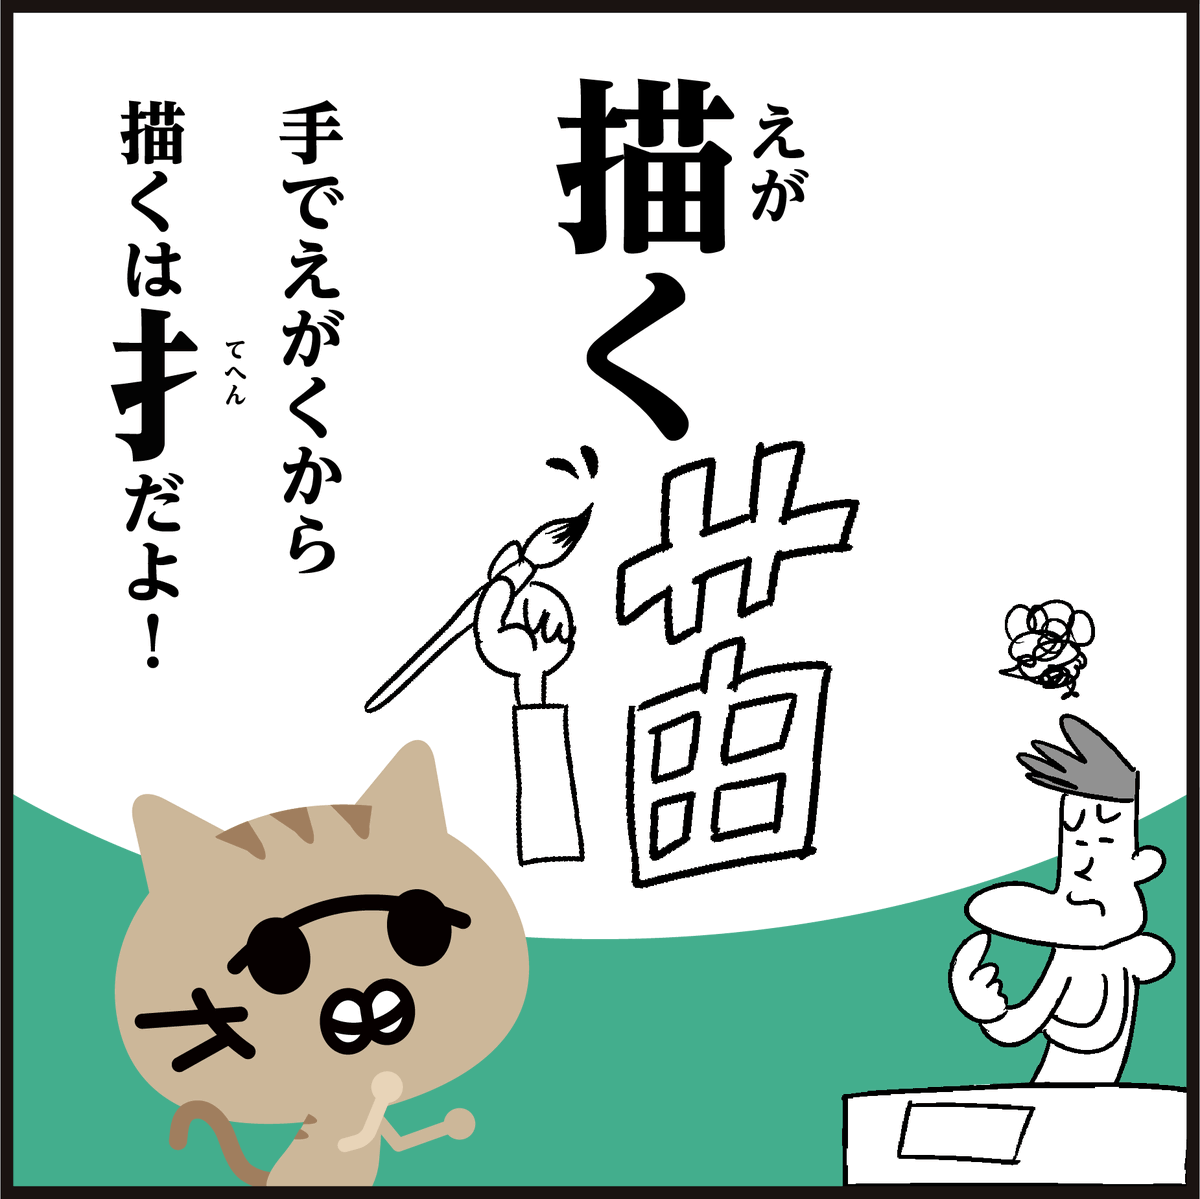 明日はスーパー猫の日(=^・^=)
漢字【猫】【描】似てますよね
〜。違いの覚え方4コマ漫画。
(あ…間違えないか…😅)
#イラスト #にゃんにゃんにゃんの日 